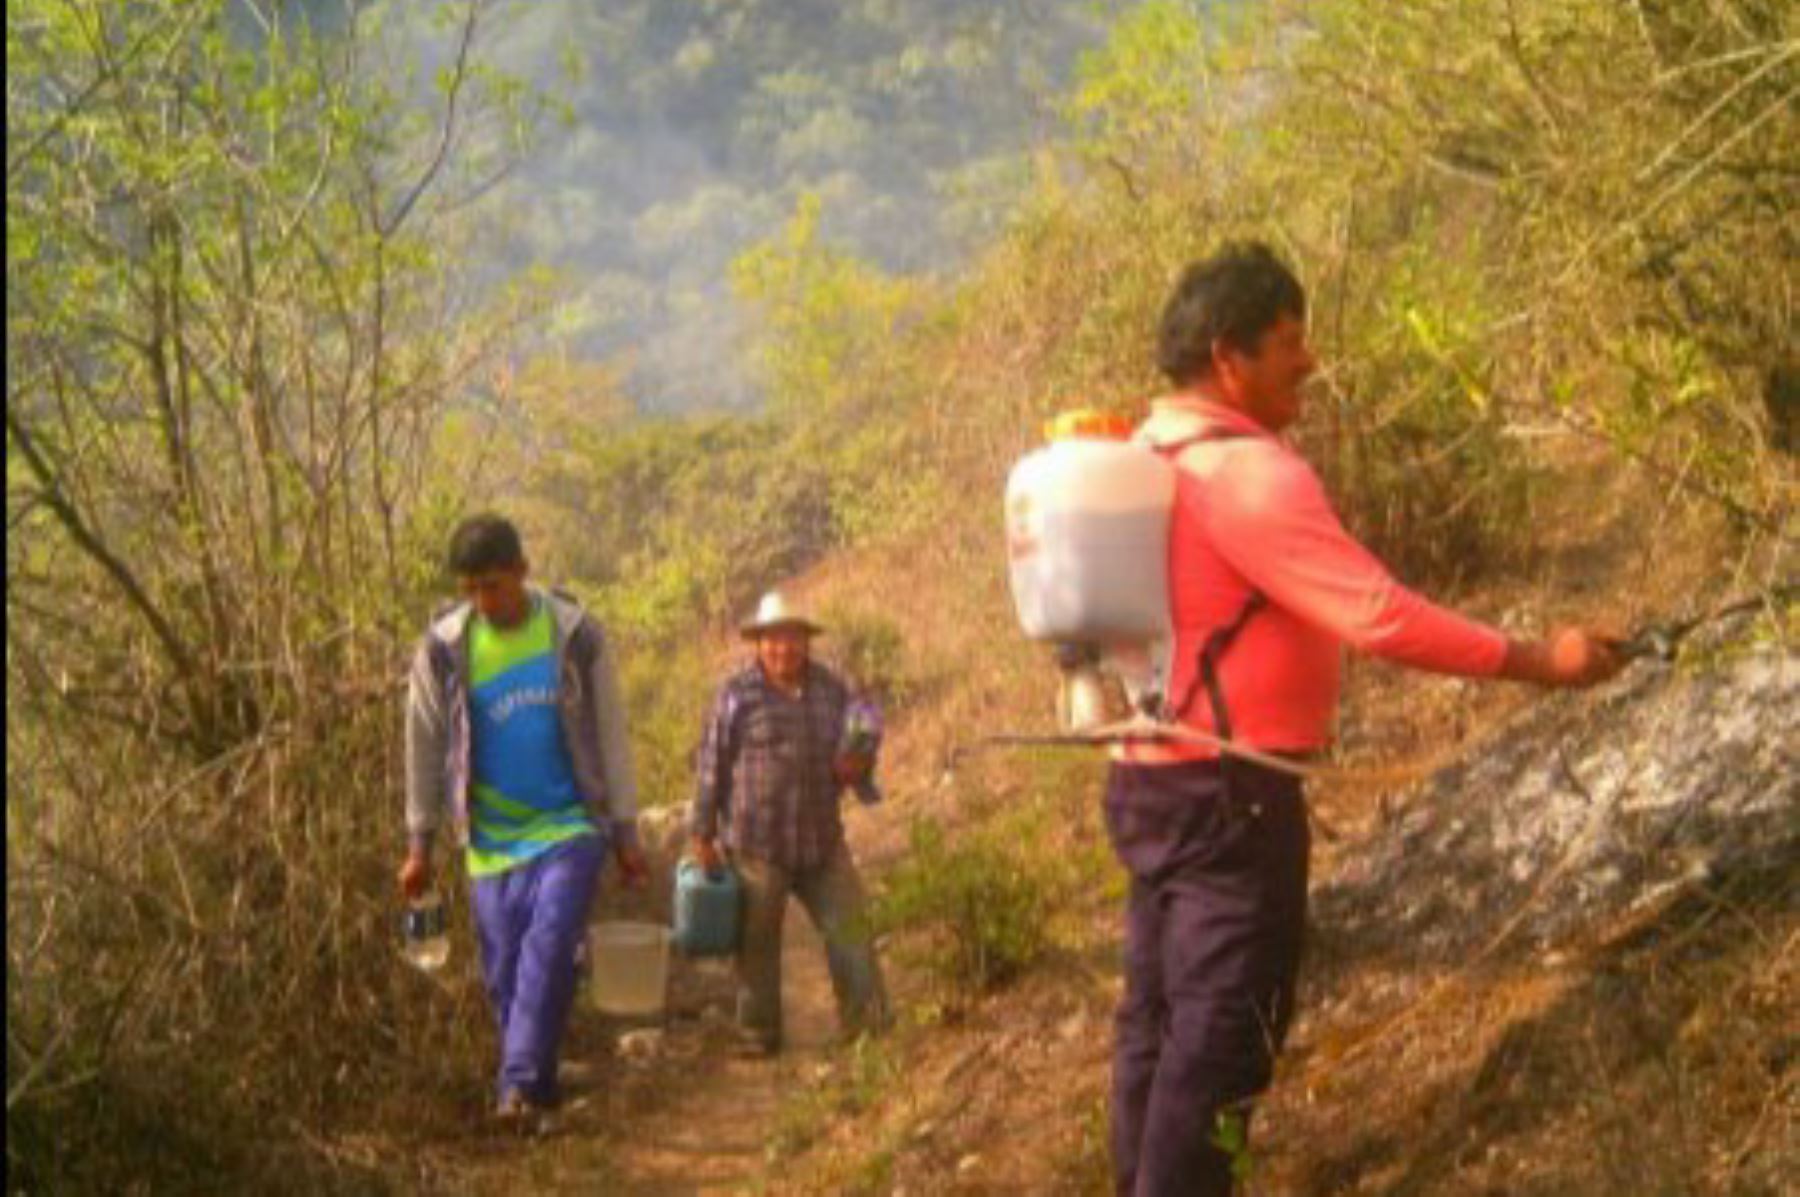 Bomberos, policías, personal municipal y pobladores.
luchan por controlar incendio forestal en Pichirhua, región Apurímac.